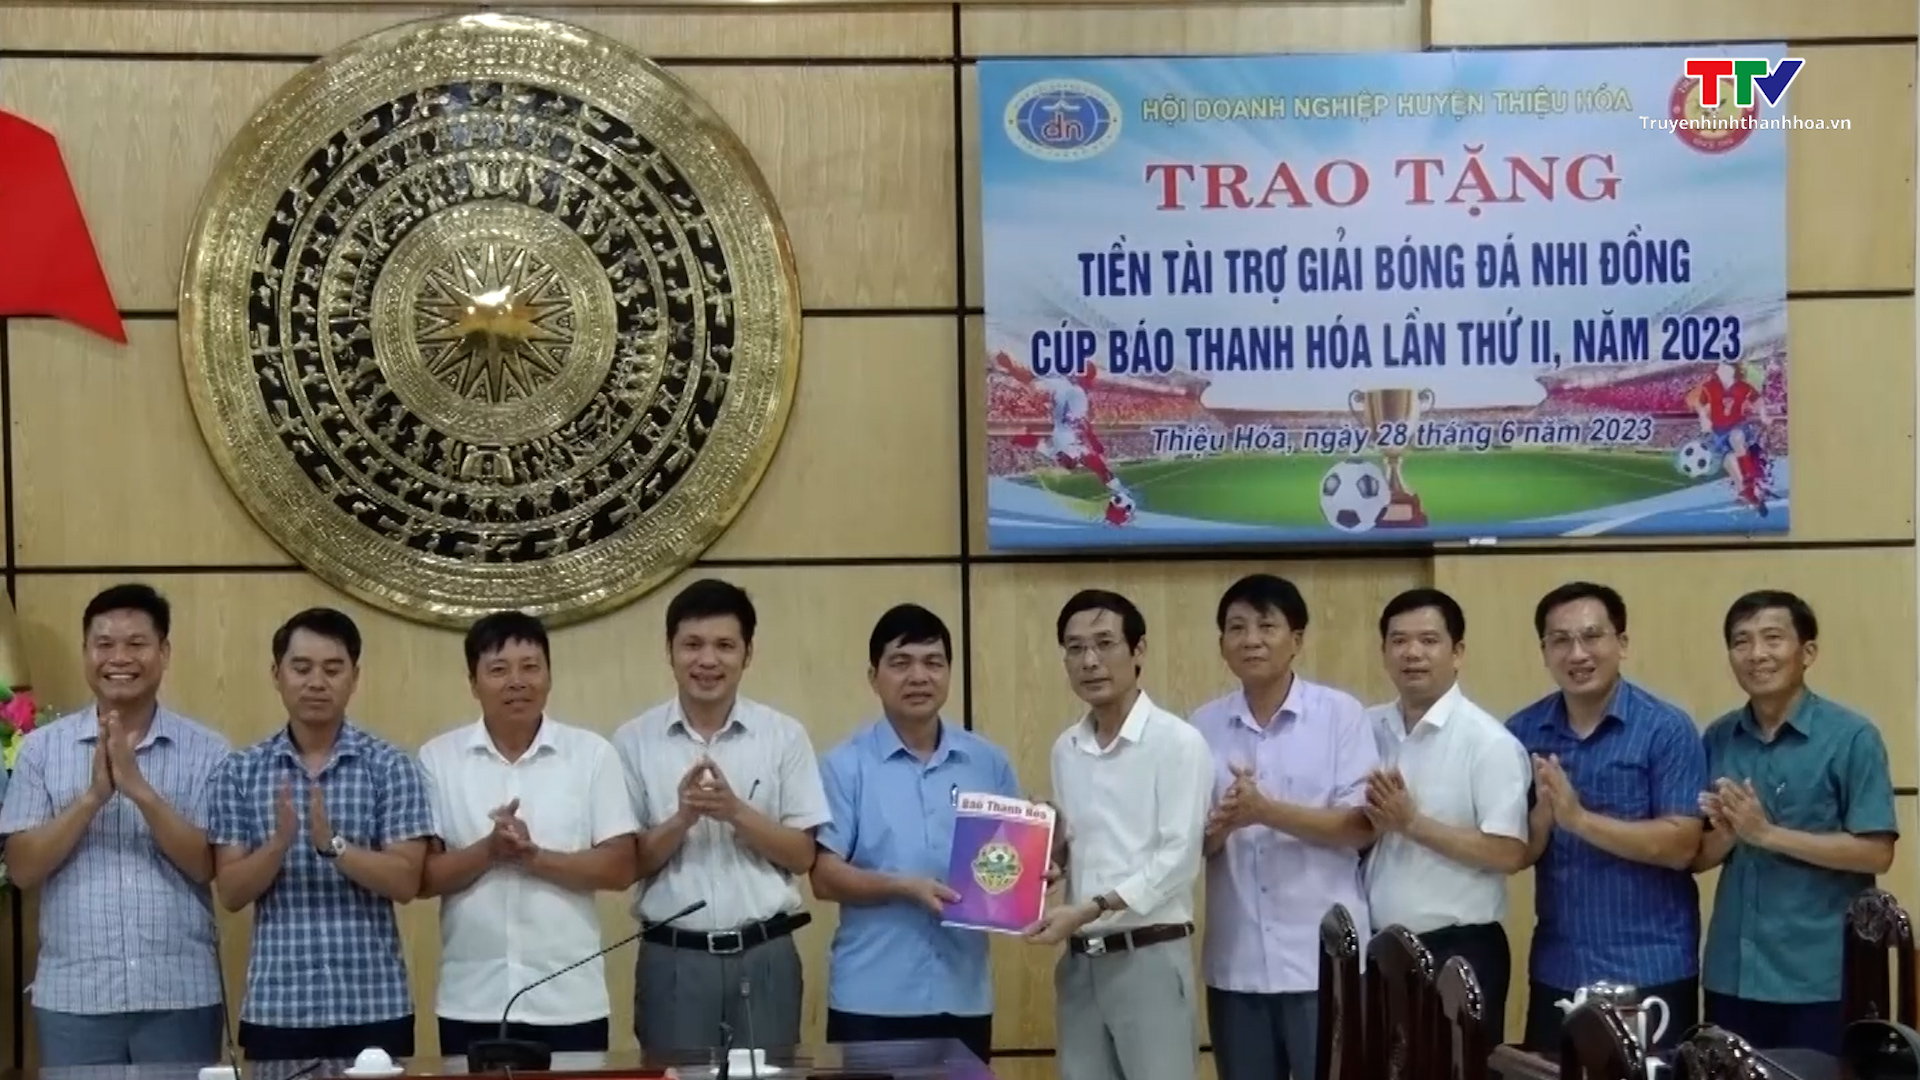 Trao tiền tài trợ cho Giải bóng đá Nhi đồng Cúp Báo Thanh Hóa lần thứ hai - năm 2023 - Ảnh 3.